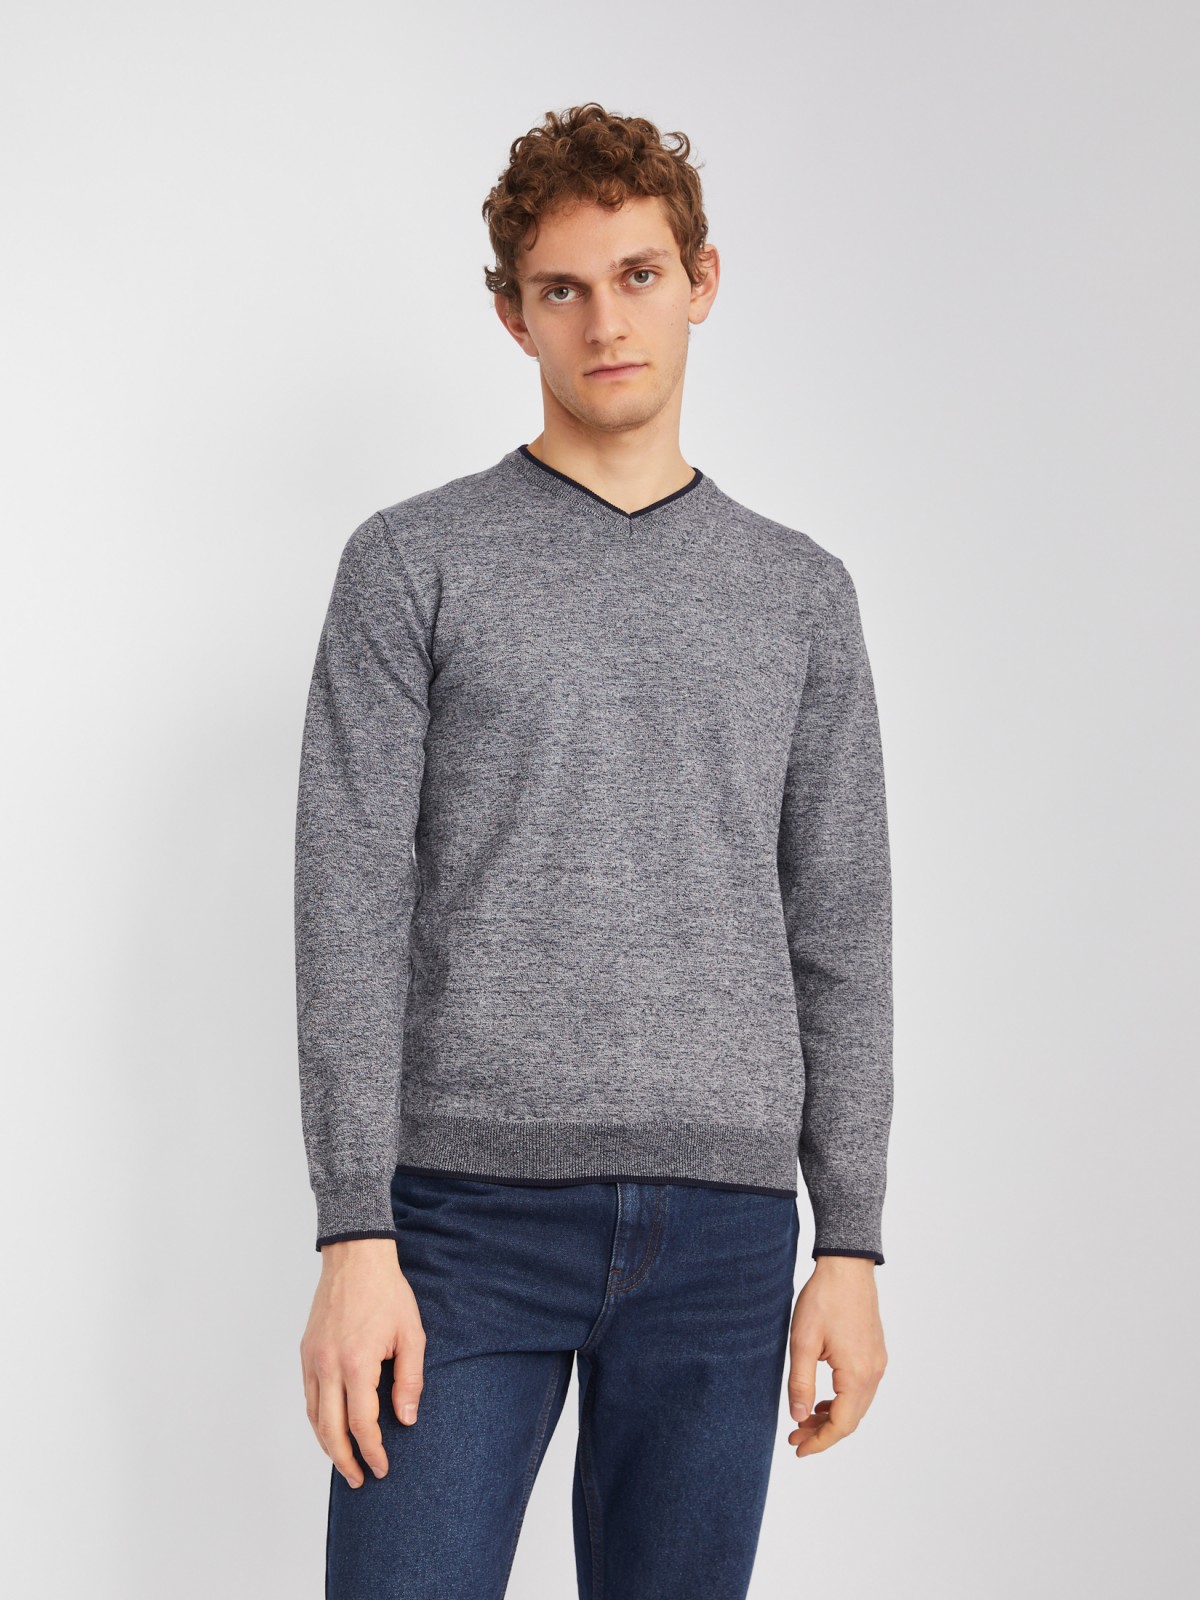 Тонкий трикотажный пуловер с длинным рукавом zolla 014116101082, цвет темно-серый, размер M - фото 1